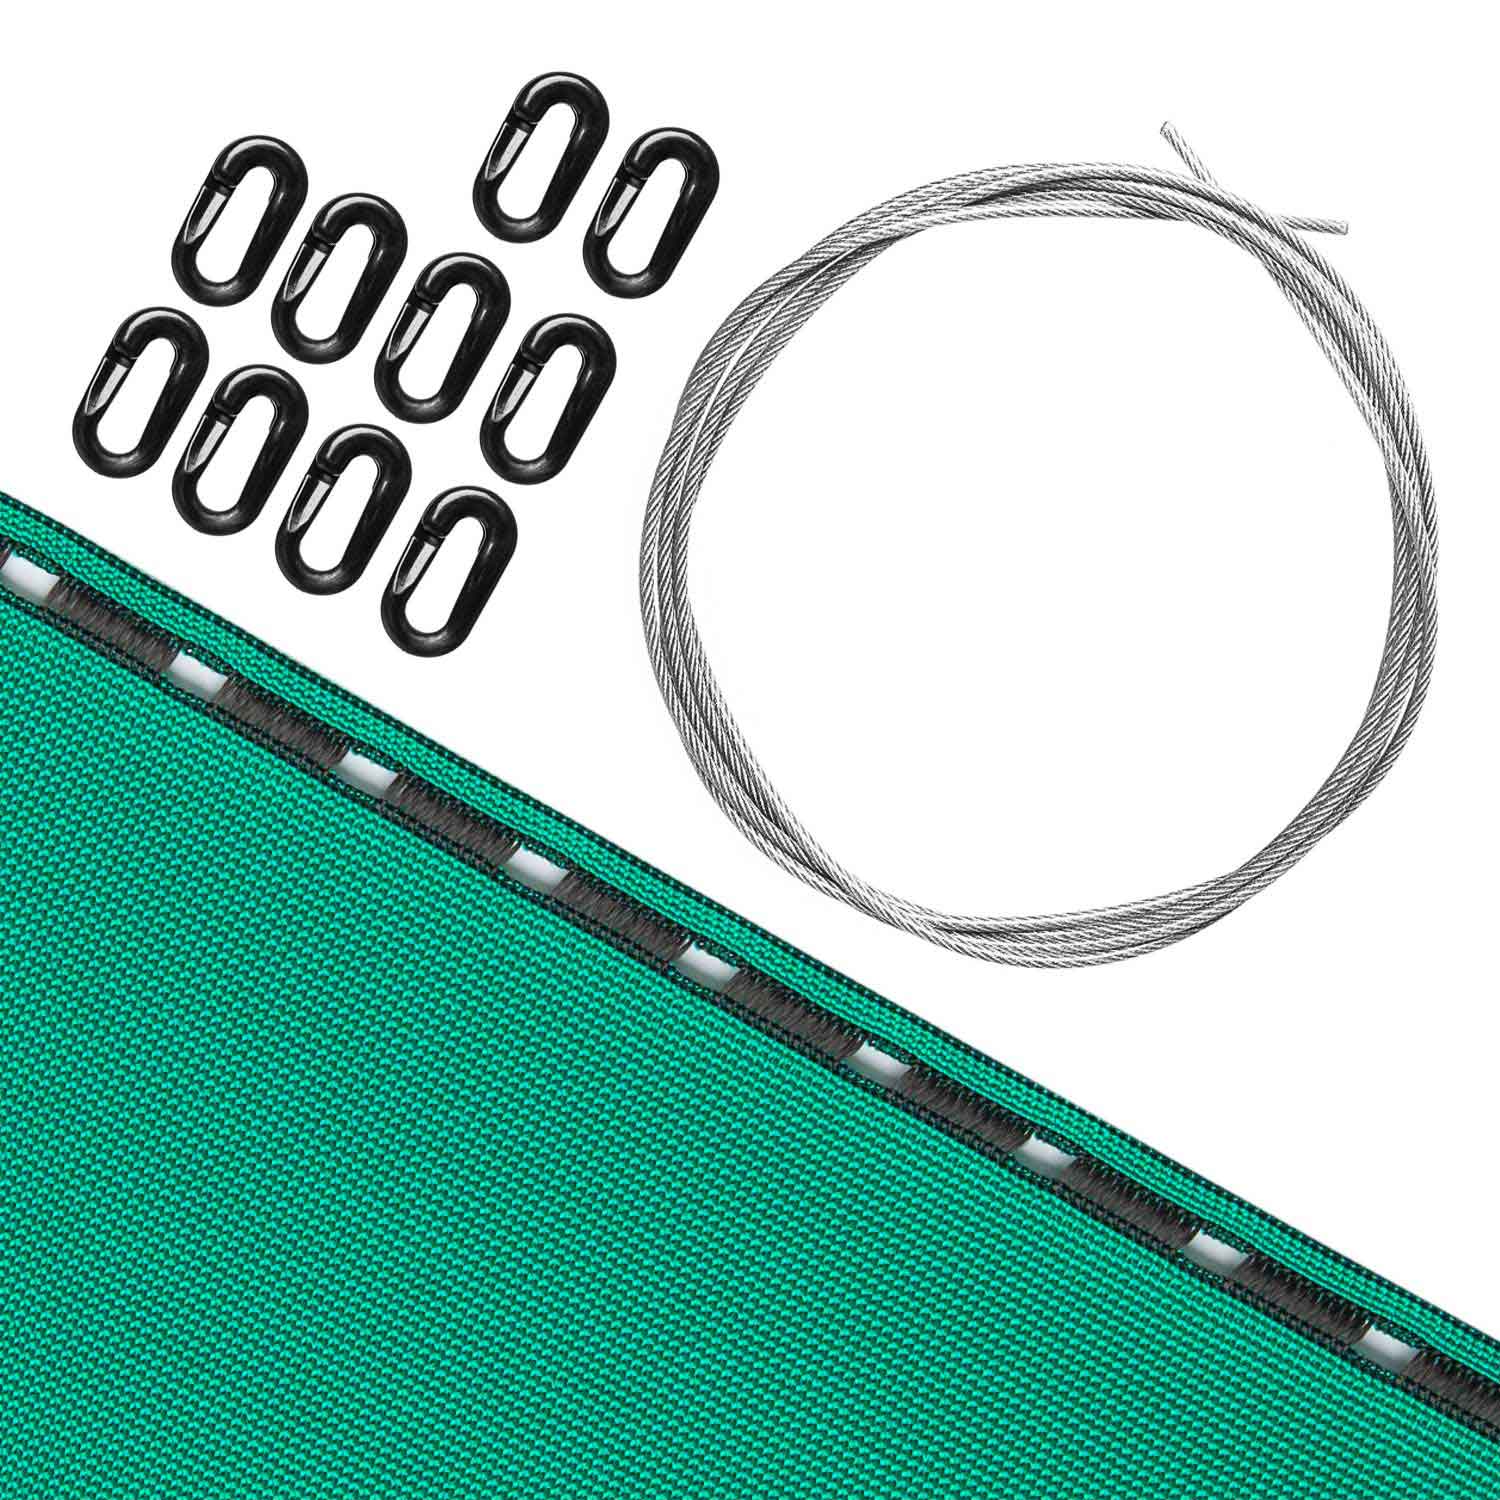 Zubehör breit Sonderposten: Pfeilfangnetz grün extra Safe 1m-2,8m hoch x 3m inkl